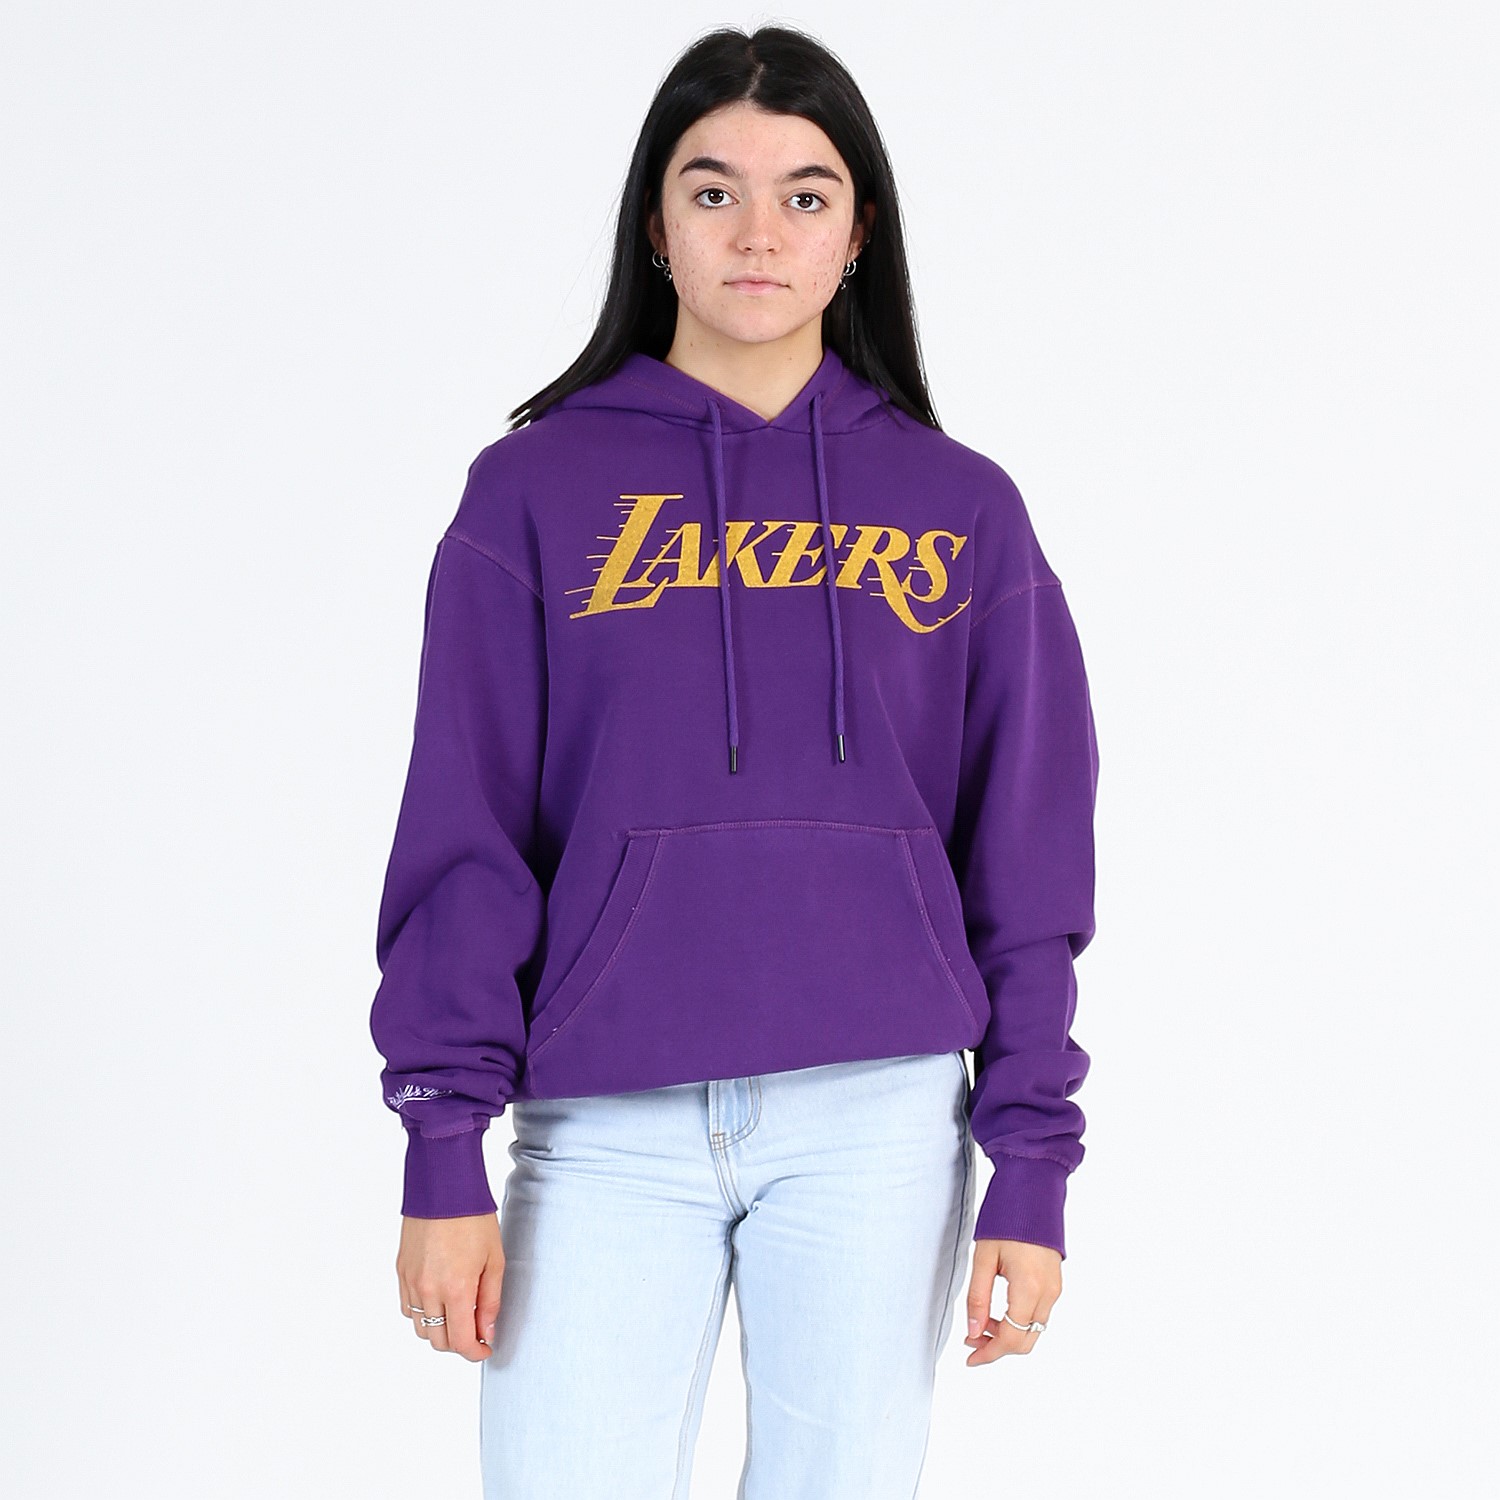 Kleding Gender-neutrale kleding volwassenen Hoodies & Sweatshirts Sweatshirts code:KF Vintage jaren 80 Los Angeles Lakers Basketbalteams 